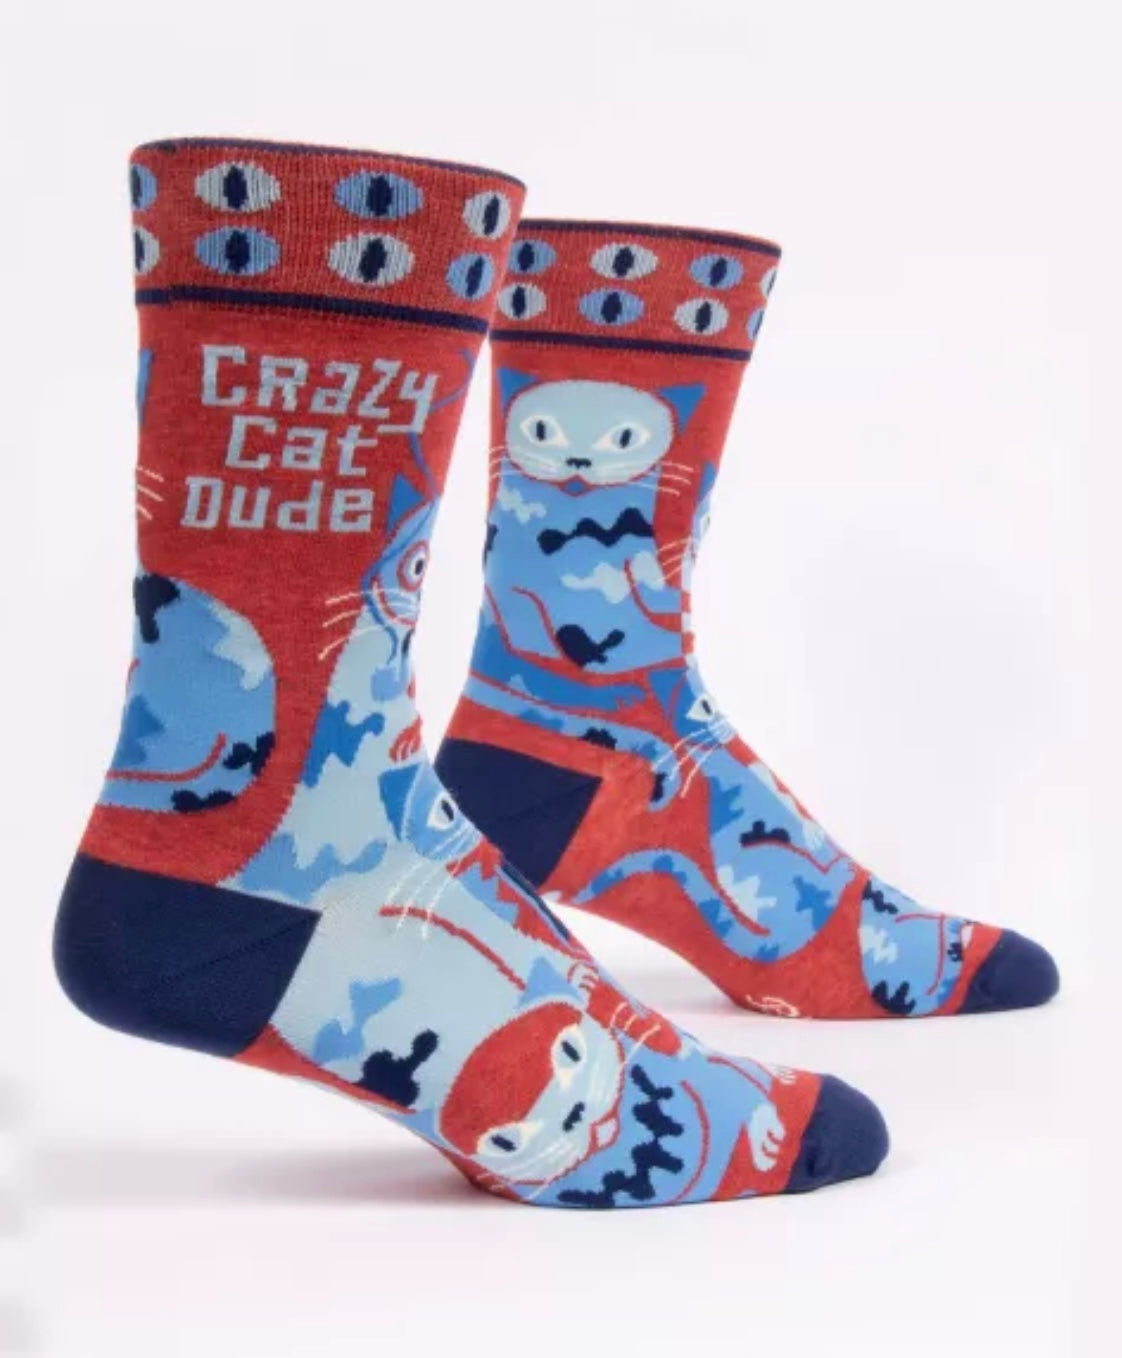 Crazy Cat Dude Men's Crew Novelty Blue Q Socks